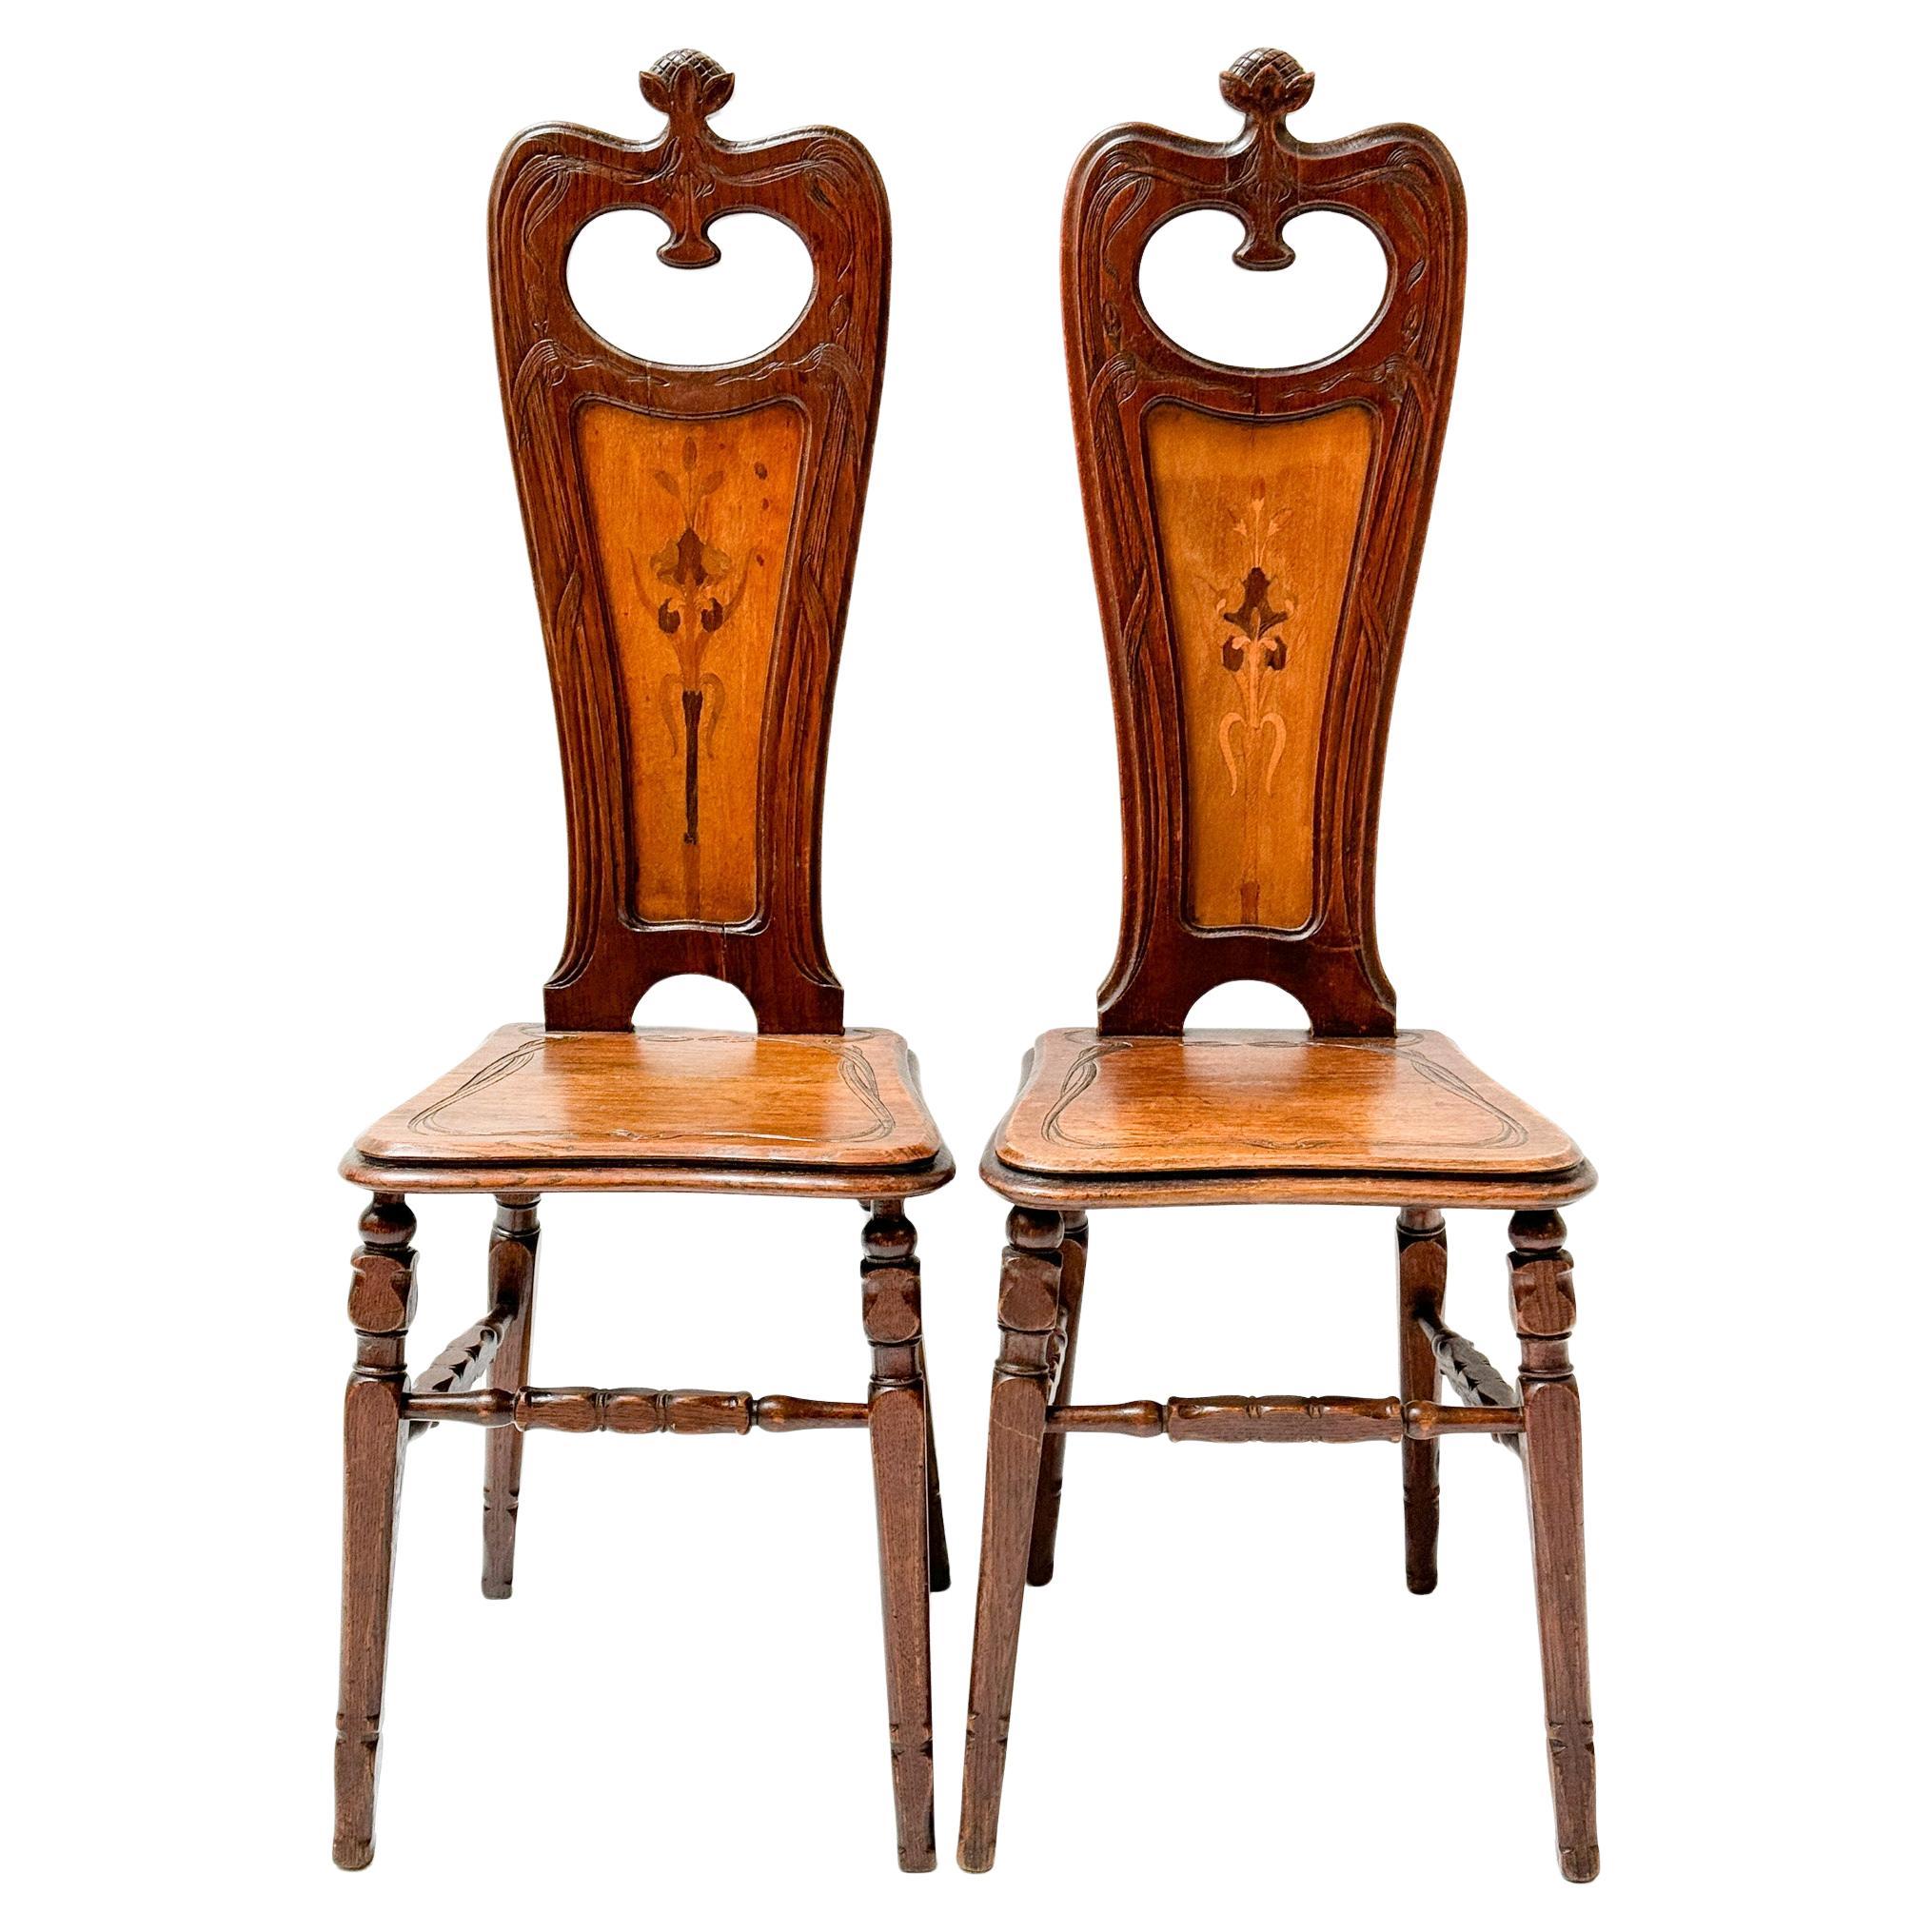 Two Oak Art Nouveau Side Chairs by Emile Gallé, 1890s For Sale